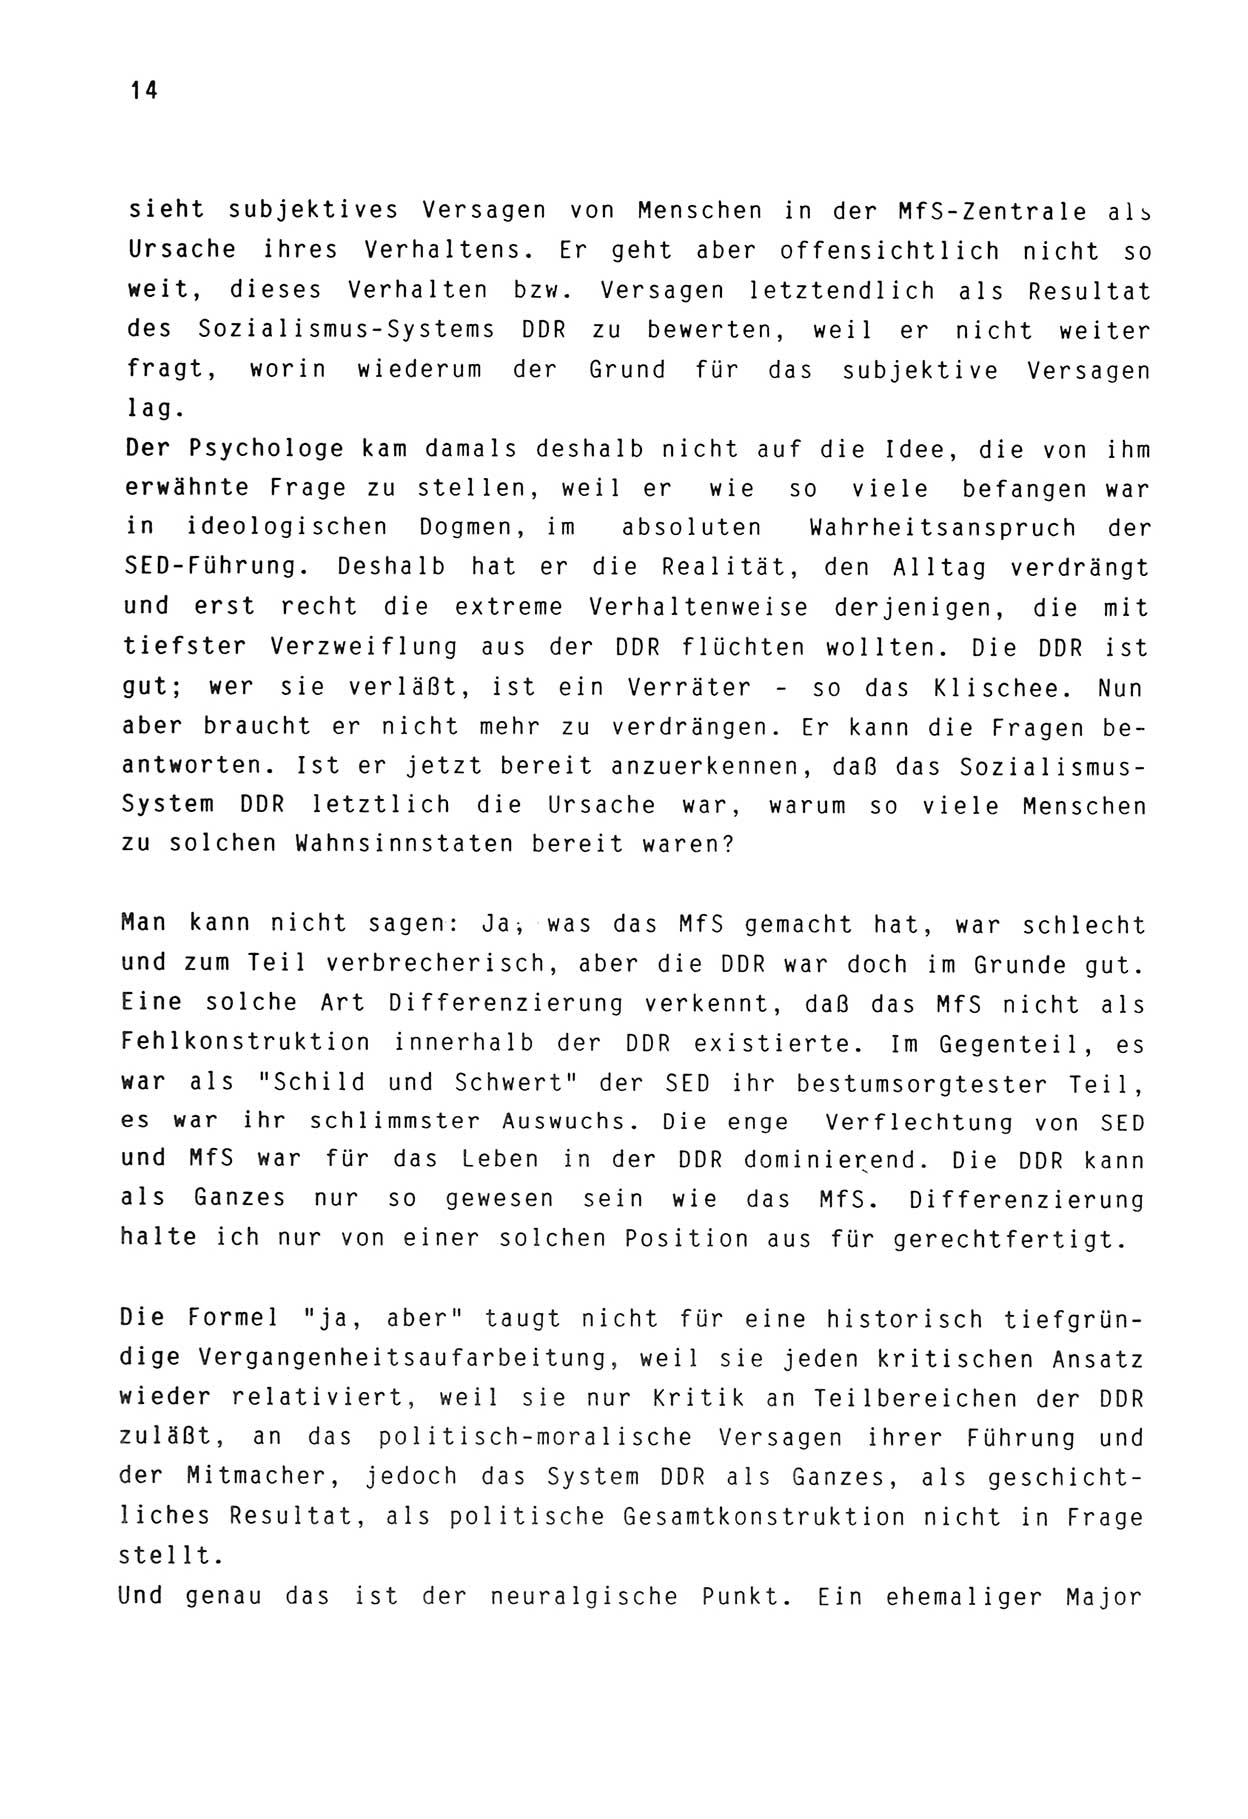 Zwie-Gespräch, Beiträge zur Aufarbeitung der Stasi-Vergangenheit [Deutsche Demokratische Republik (DDR)], Ausgabe Nr. 3, Berlin 1991, Seite 14 (Zwie-Gespr. Ausg. 3 1991, S. 14)